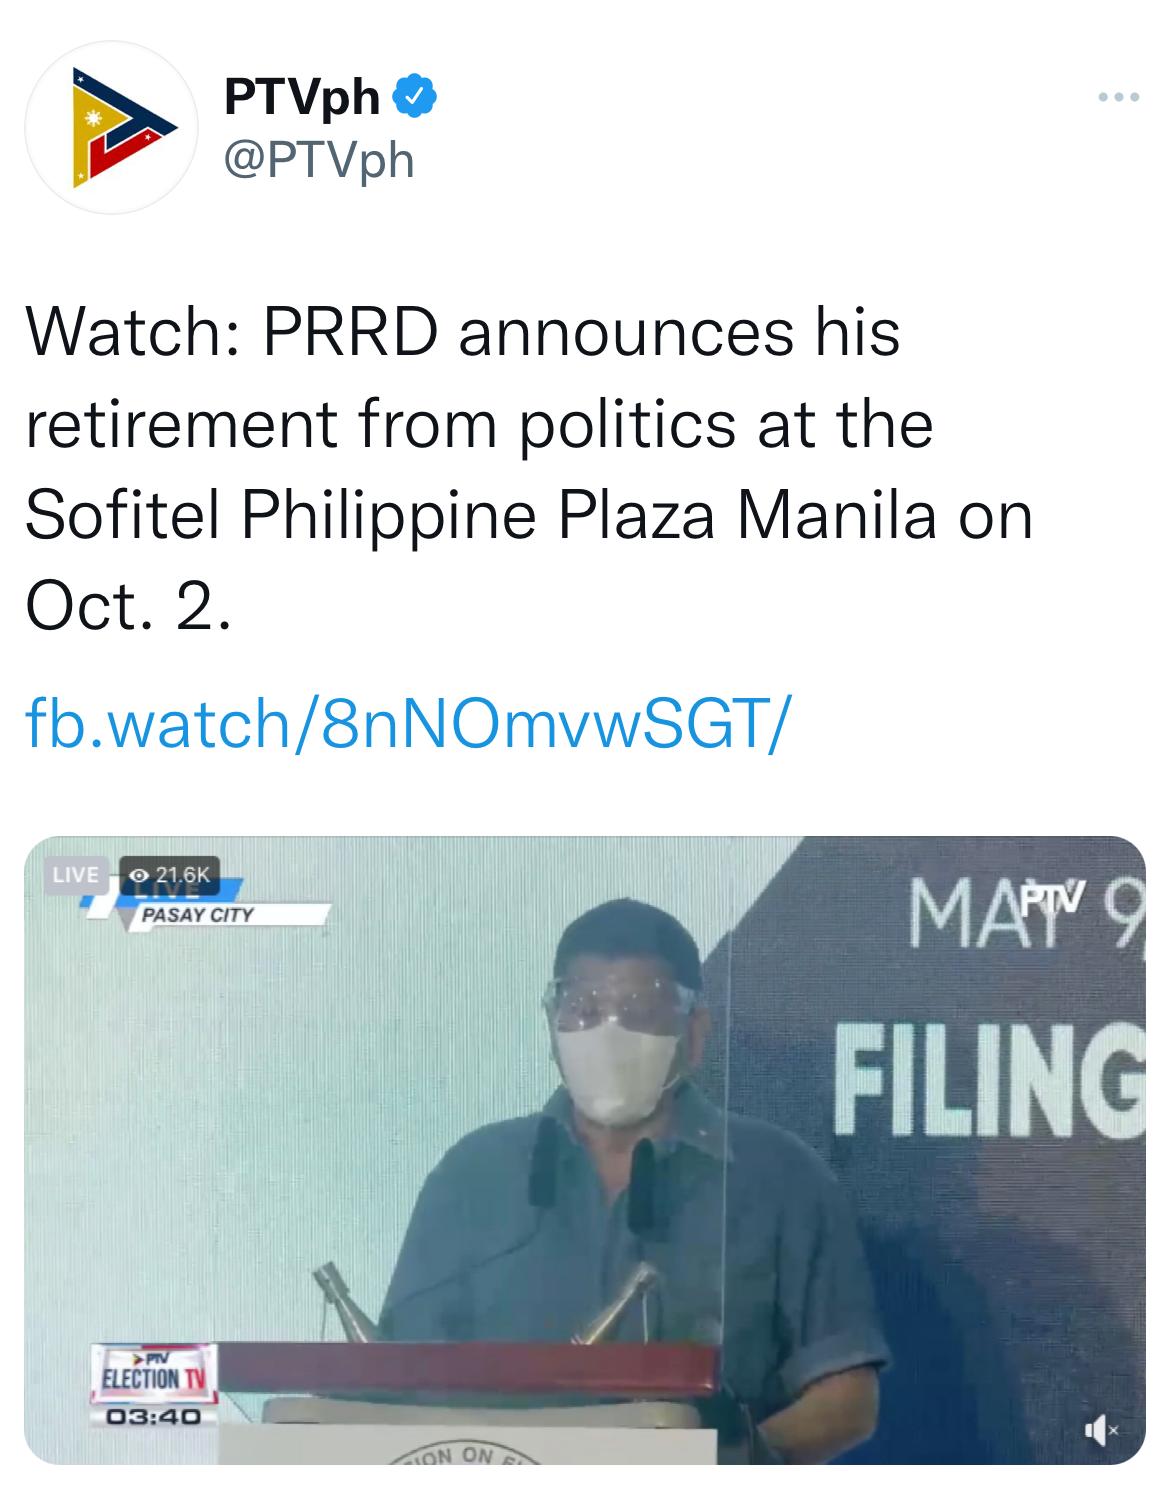 △菲律宾国家电视台PTV报道截图